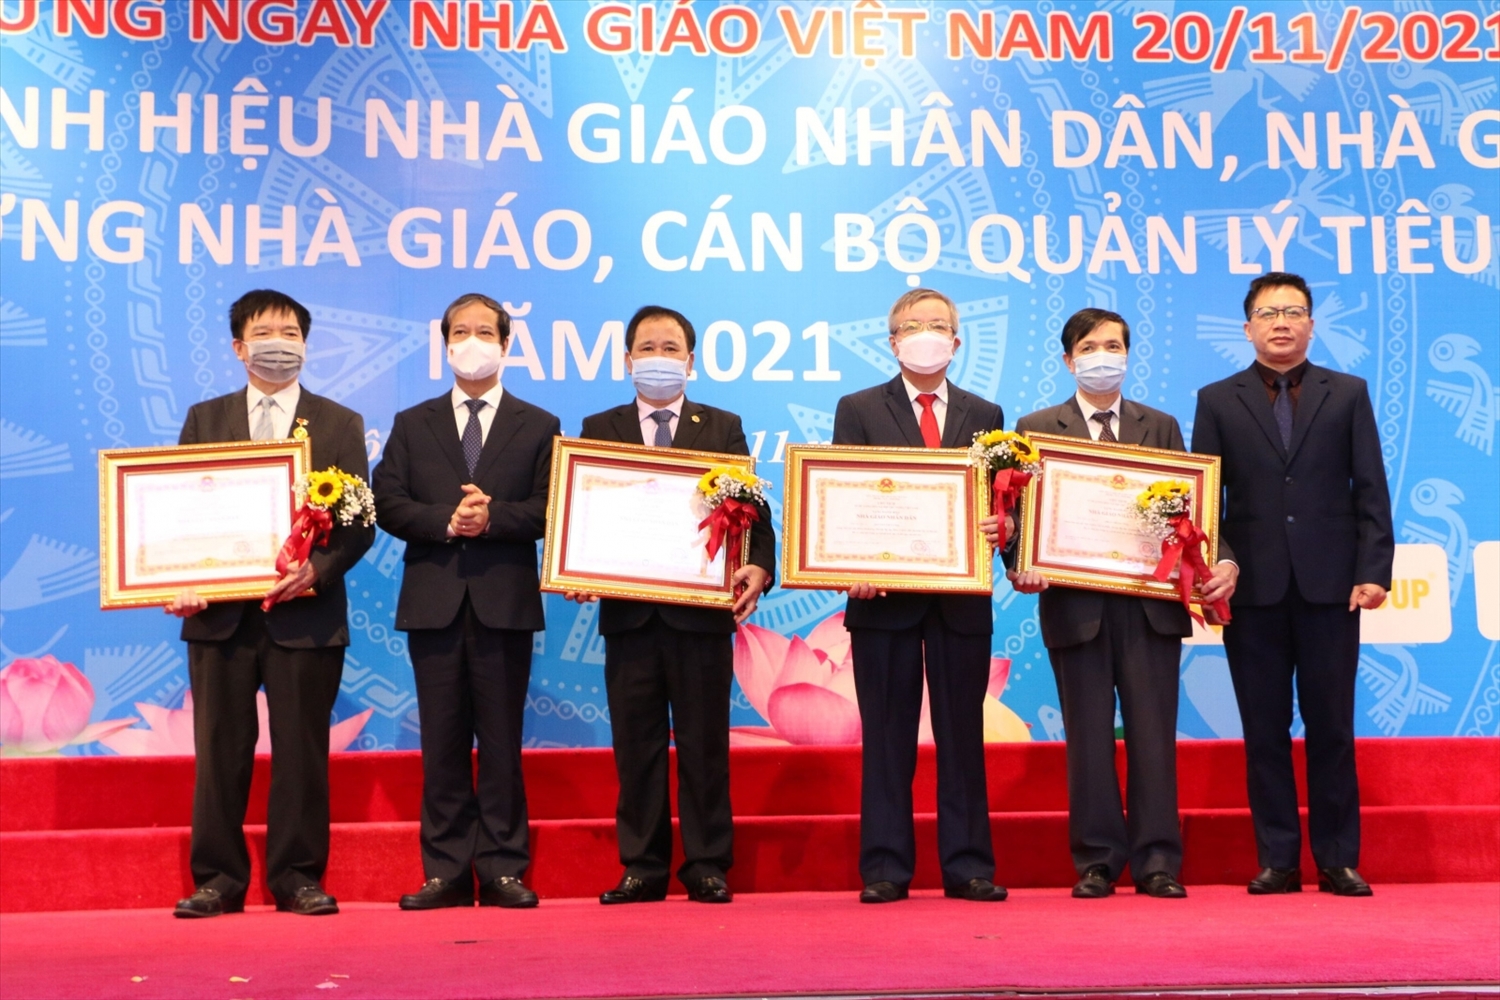 Bộ trưởng Nguyễn Kim Sơn (thứ hai từ trái qua), Chủ tịch Công đoàn Giáo dục Việt Nam Nguyễn Ngọc Ân (ngoài cùng bên phải) trao danh hiệu Nhà giáo Nhân dân